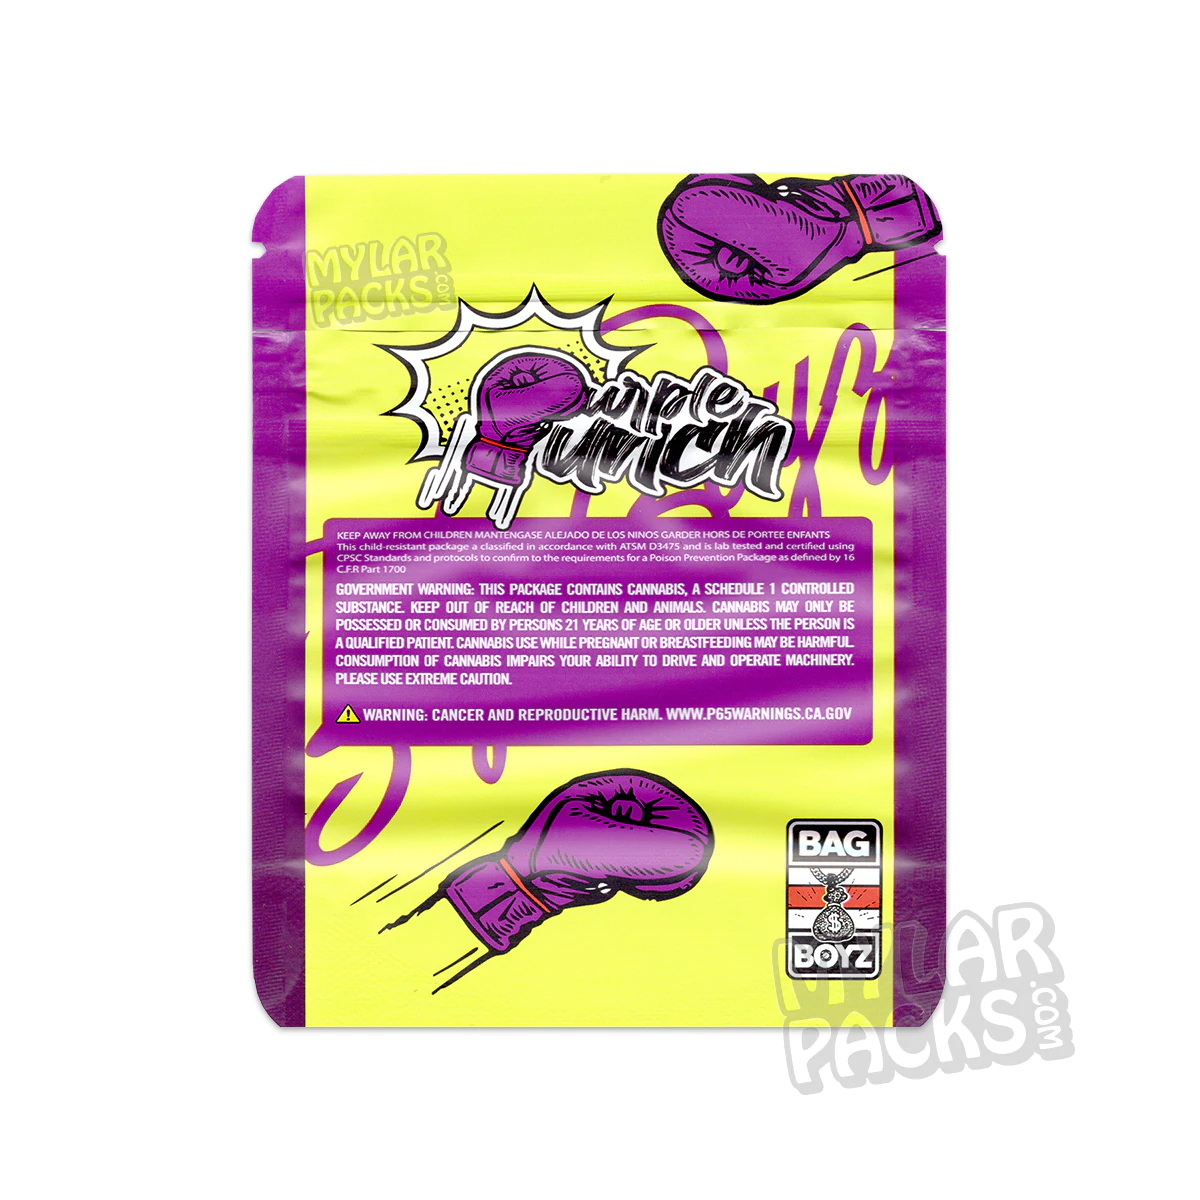 Bag Boyz Gelato 3.5g Empty Mylar Bag Flower Dry Herb Packaging